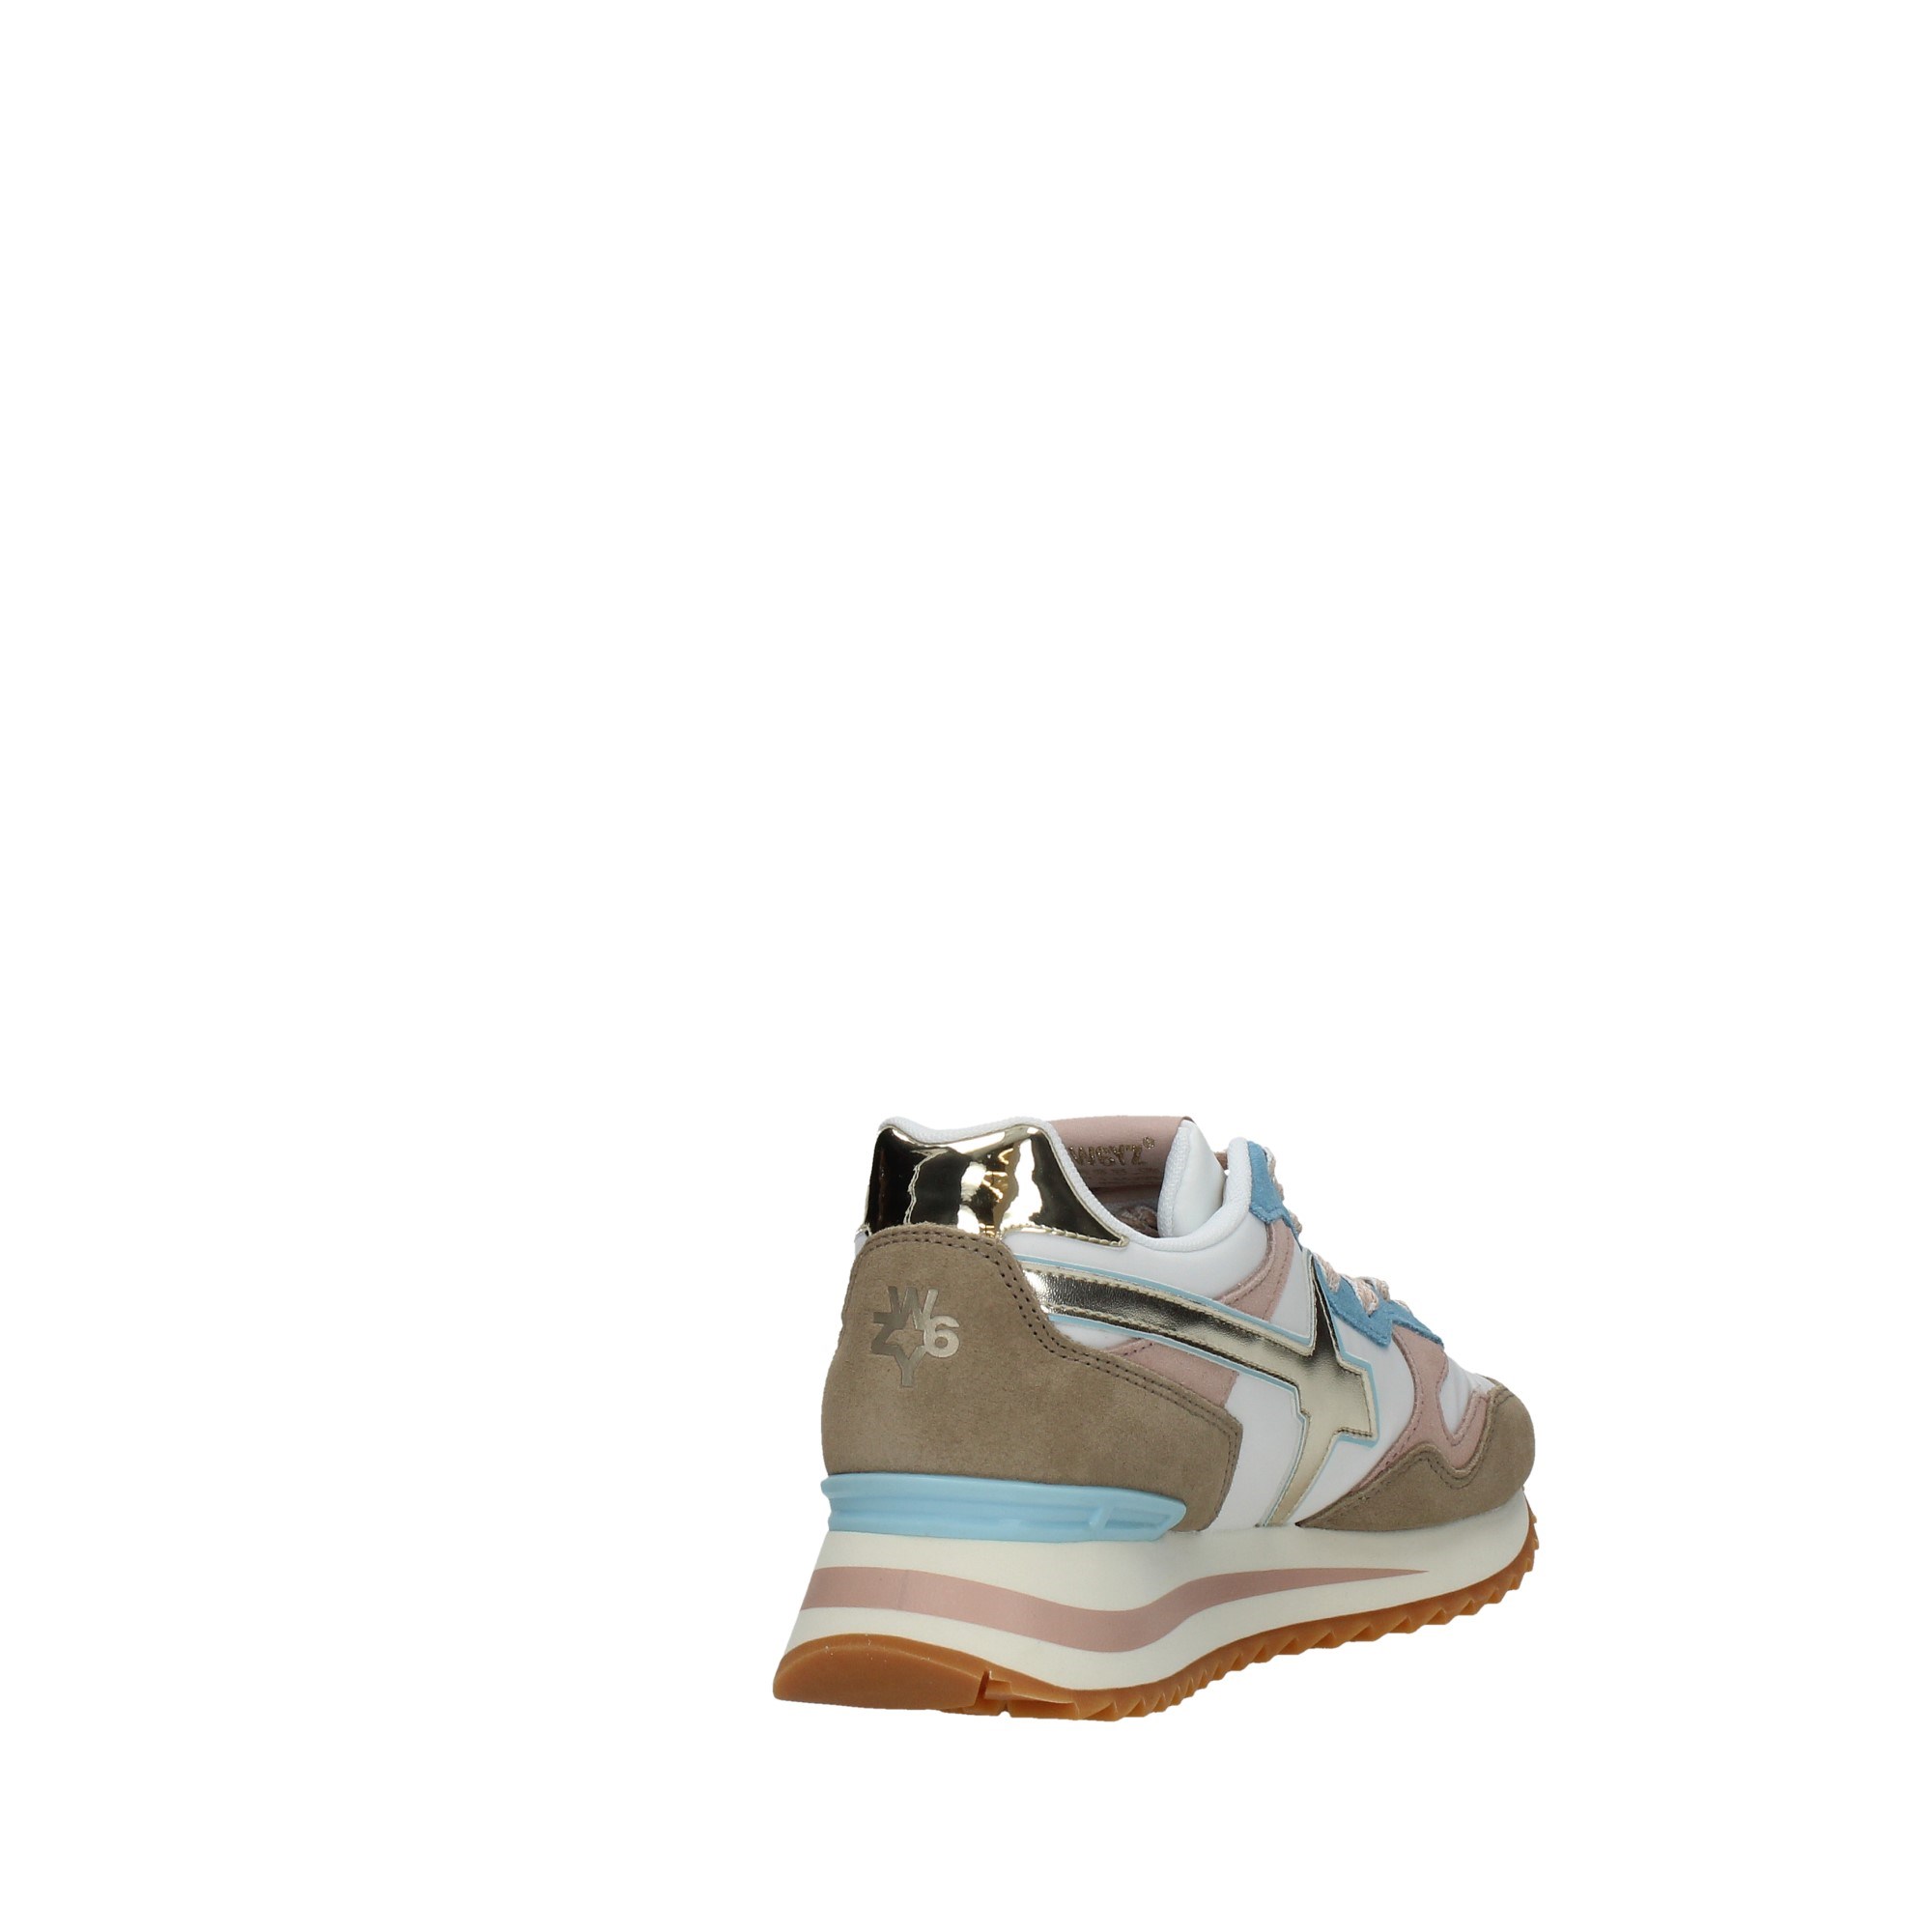 W6yz Scarpe Donna Sneakers Beige YAK D84